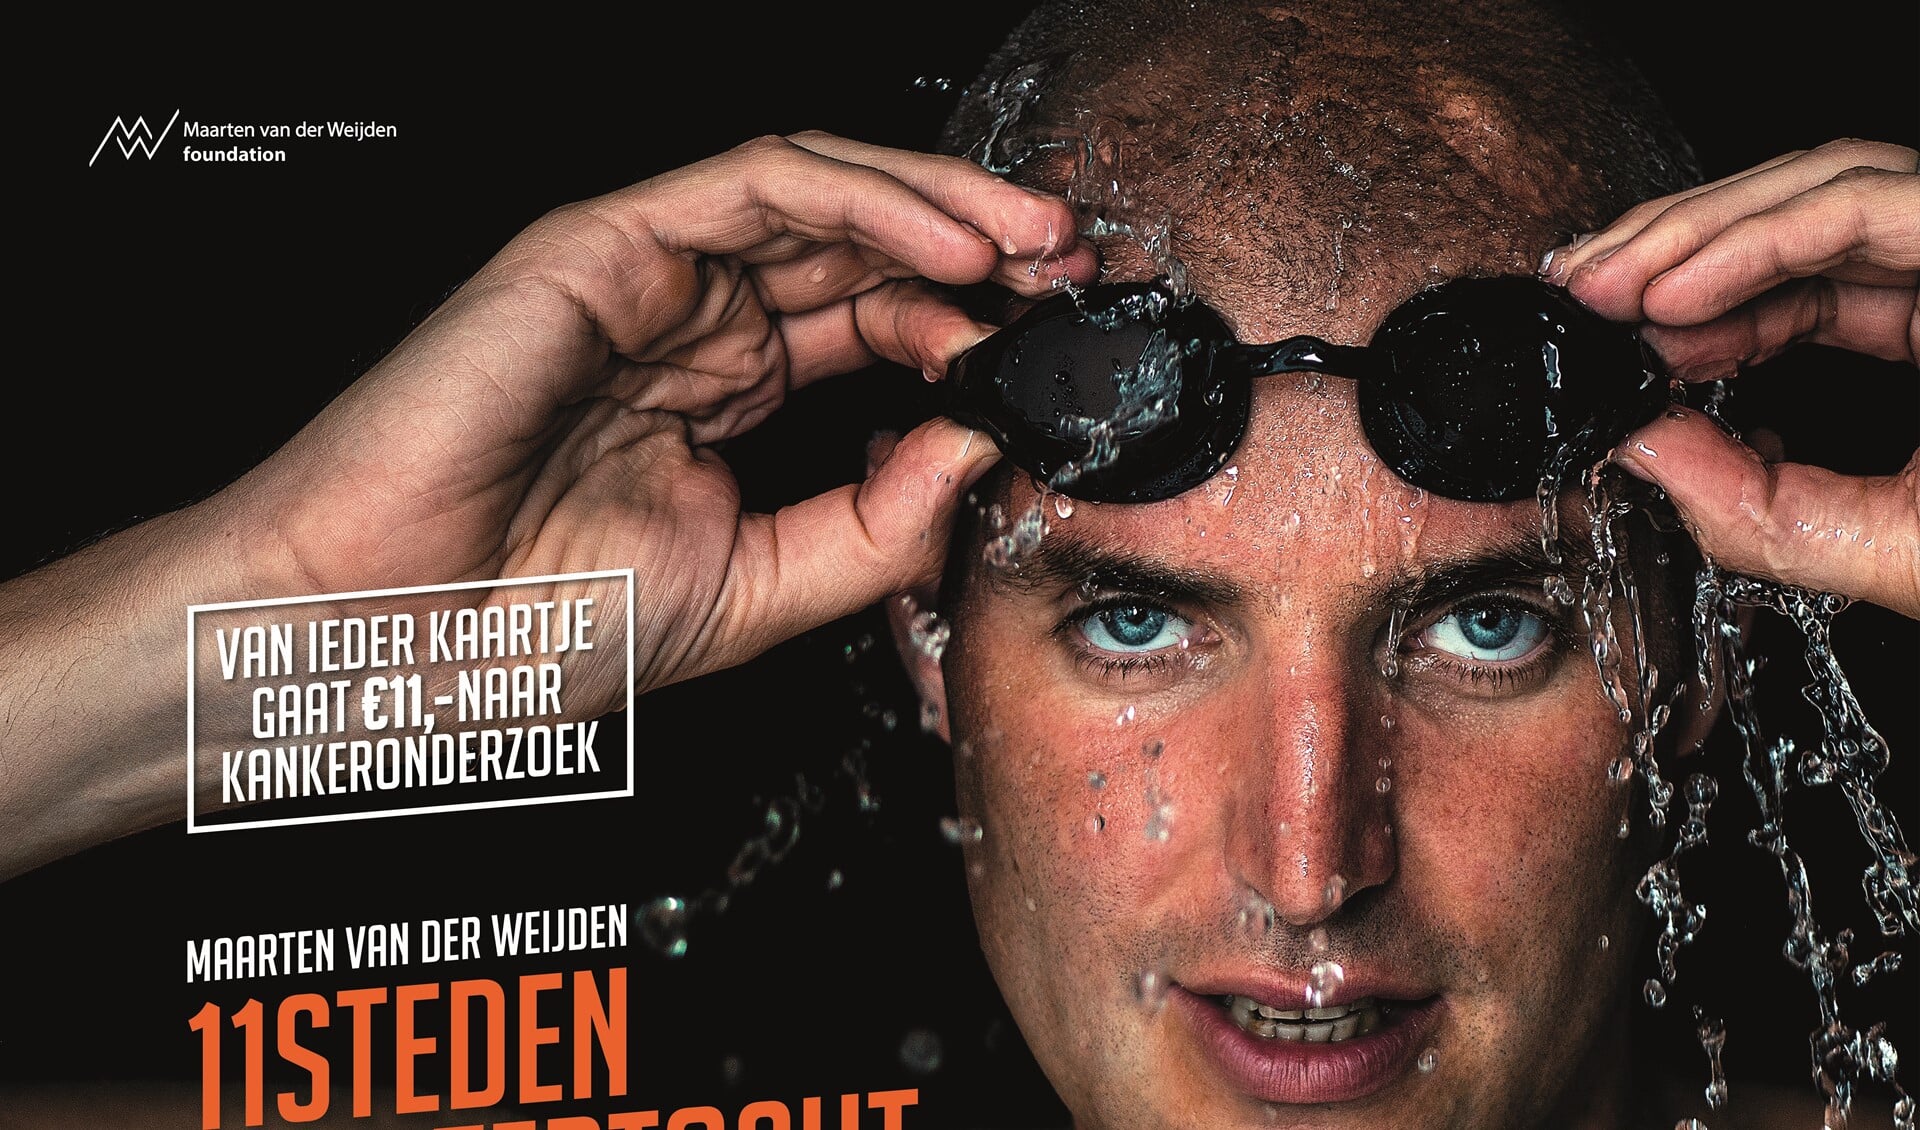  Maarten van der Weijden doet na zijn heroïsche zwemtocht elf theaters aan, waaronder Amphion. Foto: PR